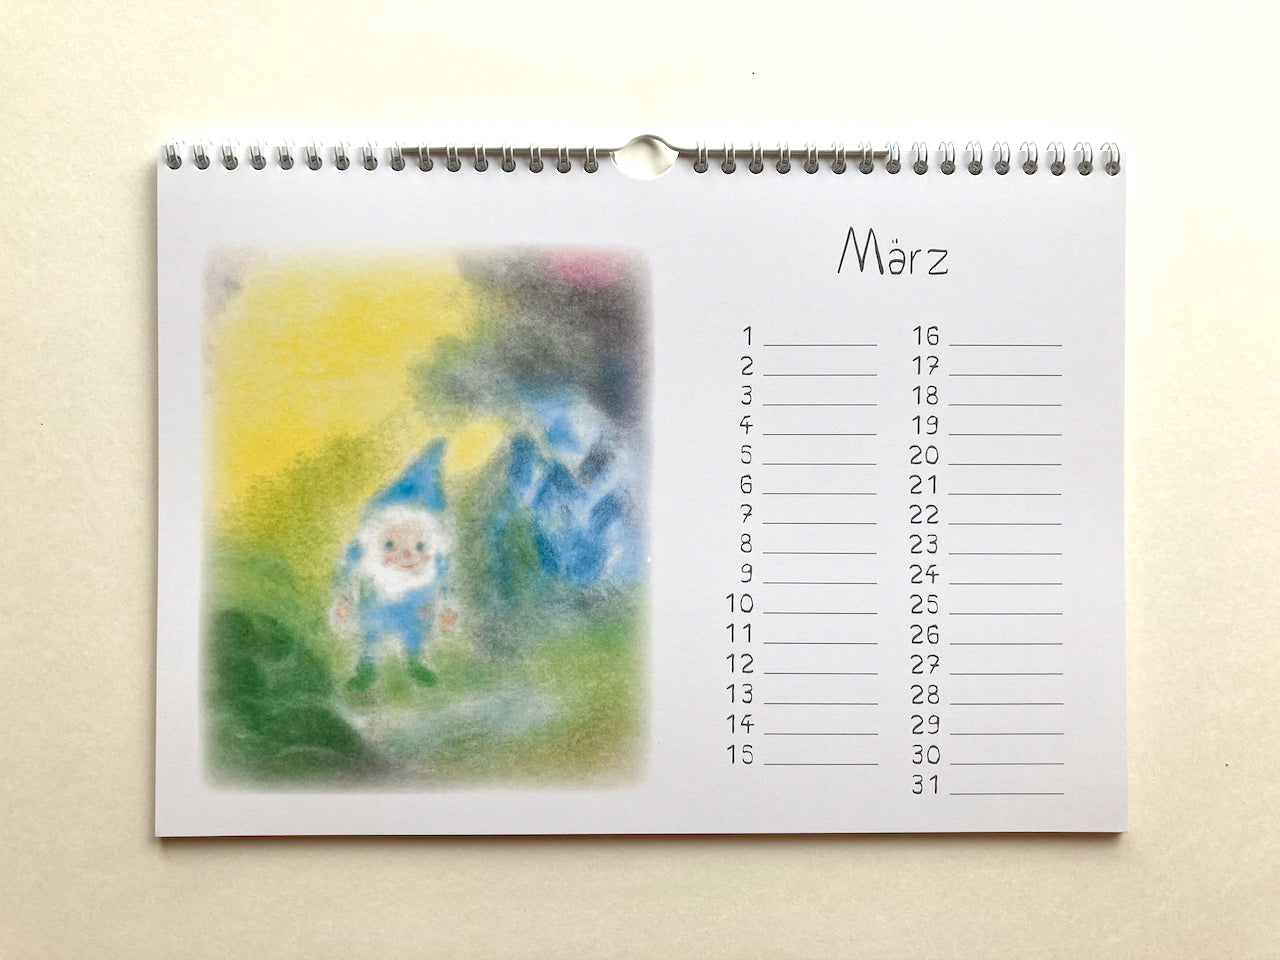 Immerwährender Zwergenkalender, März in Seccorell-Technik von Andrea Reiß